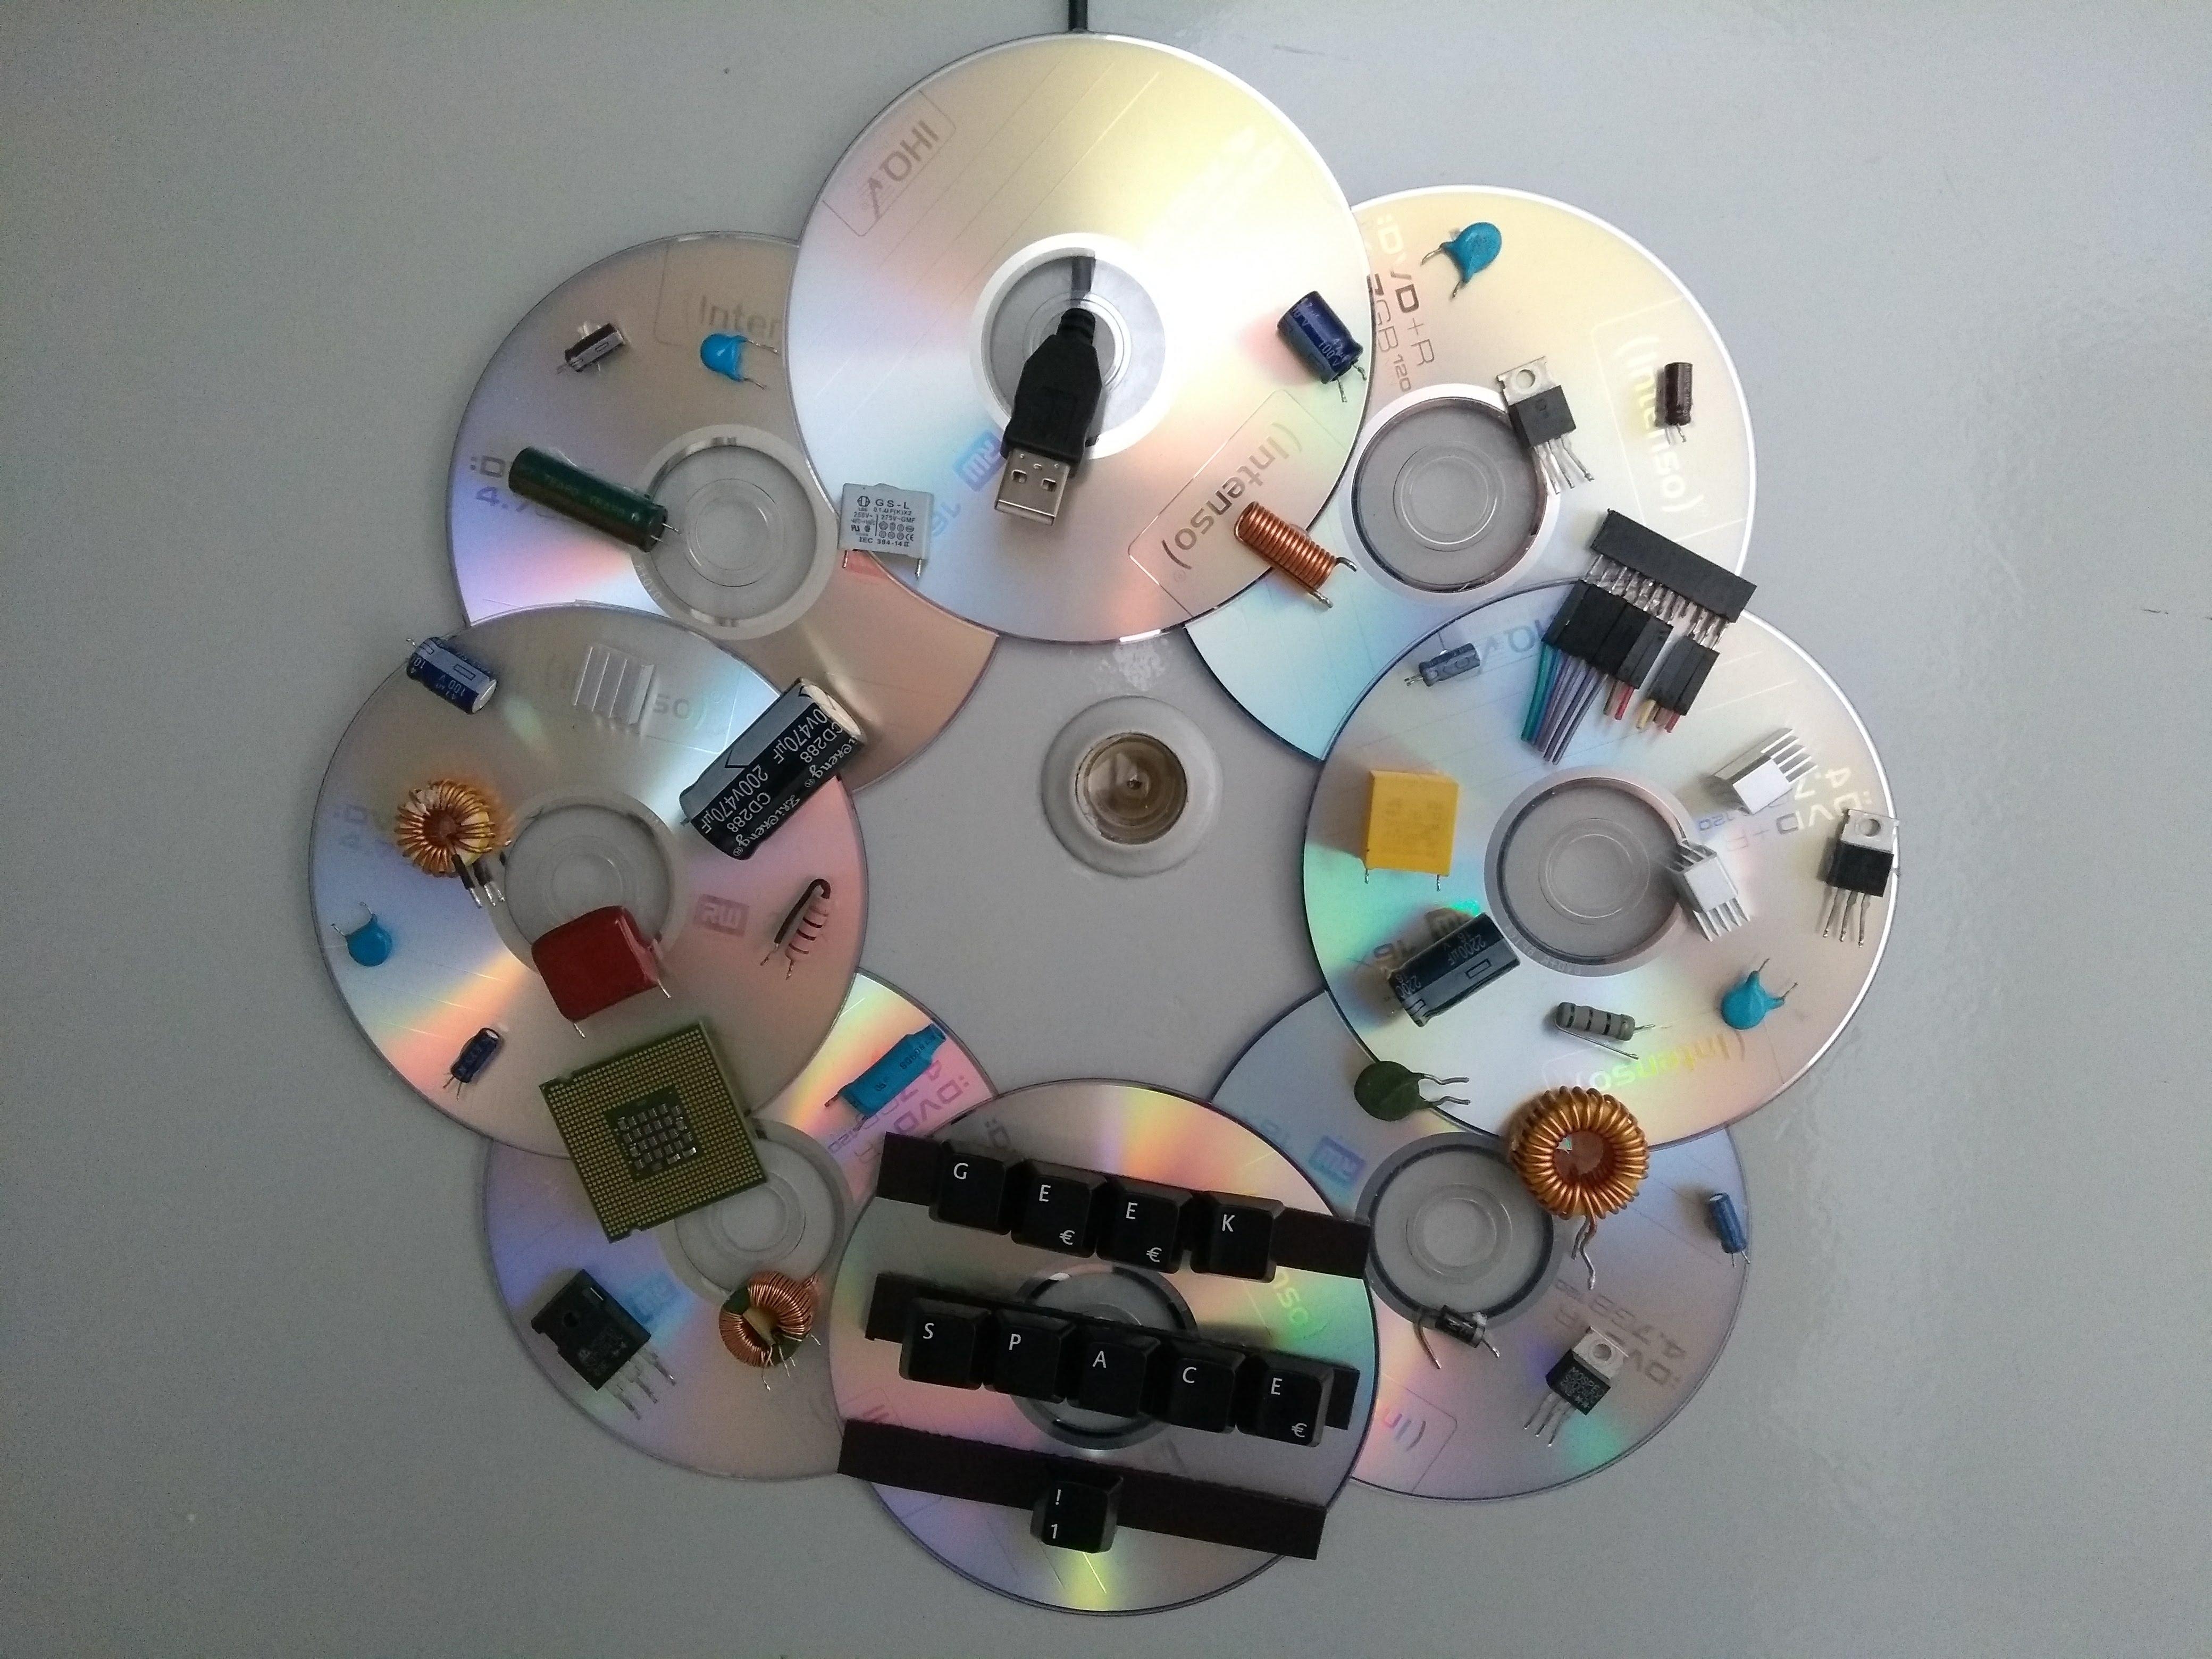 Türkranz aus alten CDs und Computerteilen, I love #Upcycling #Diyweek